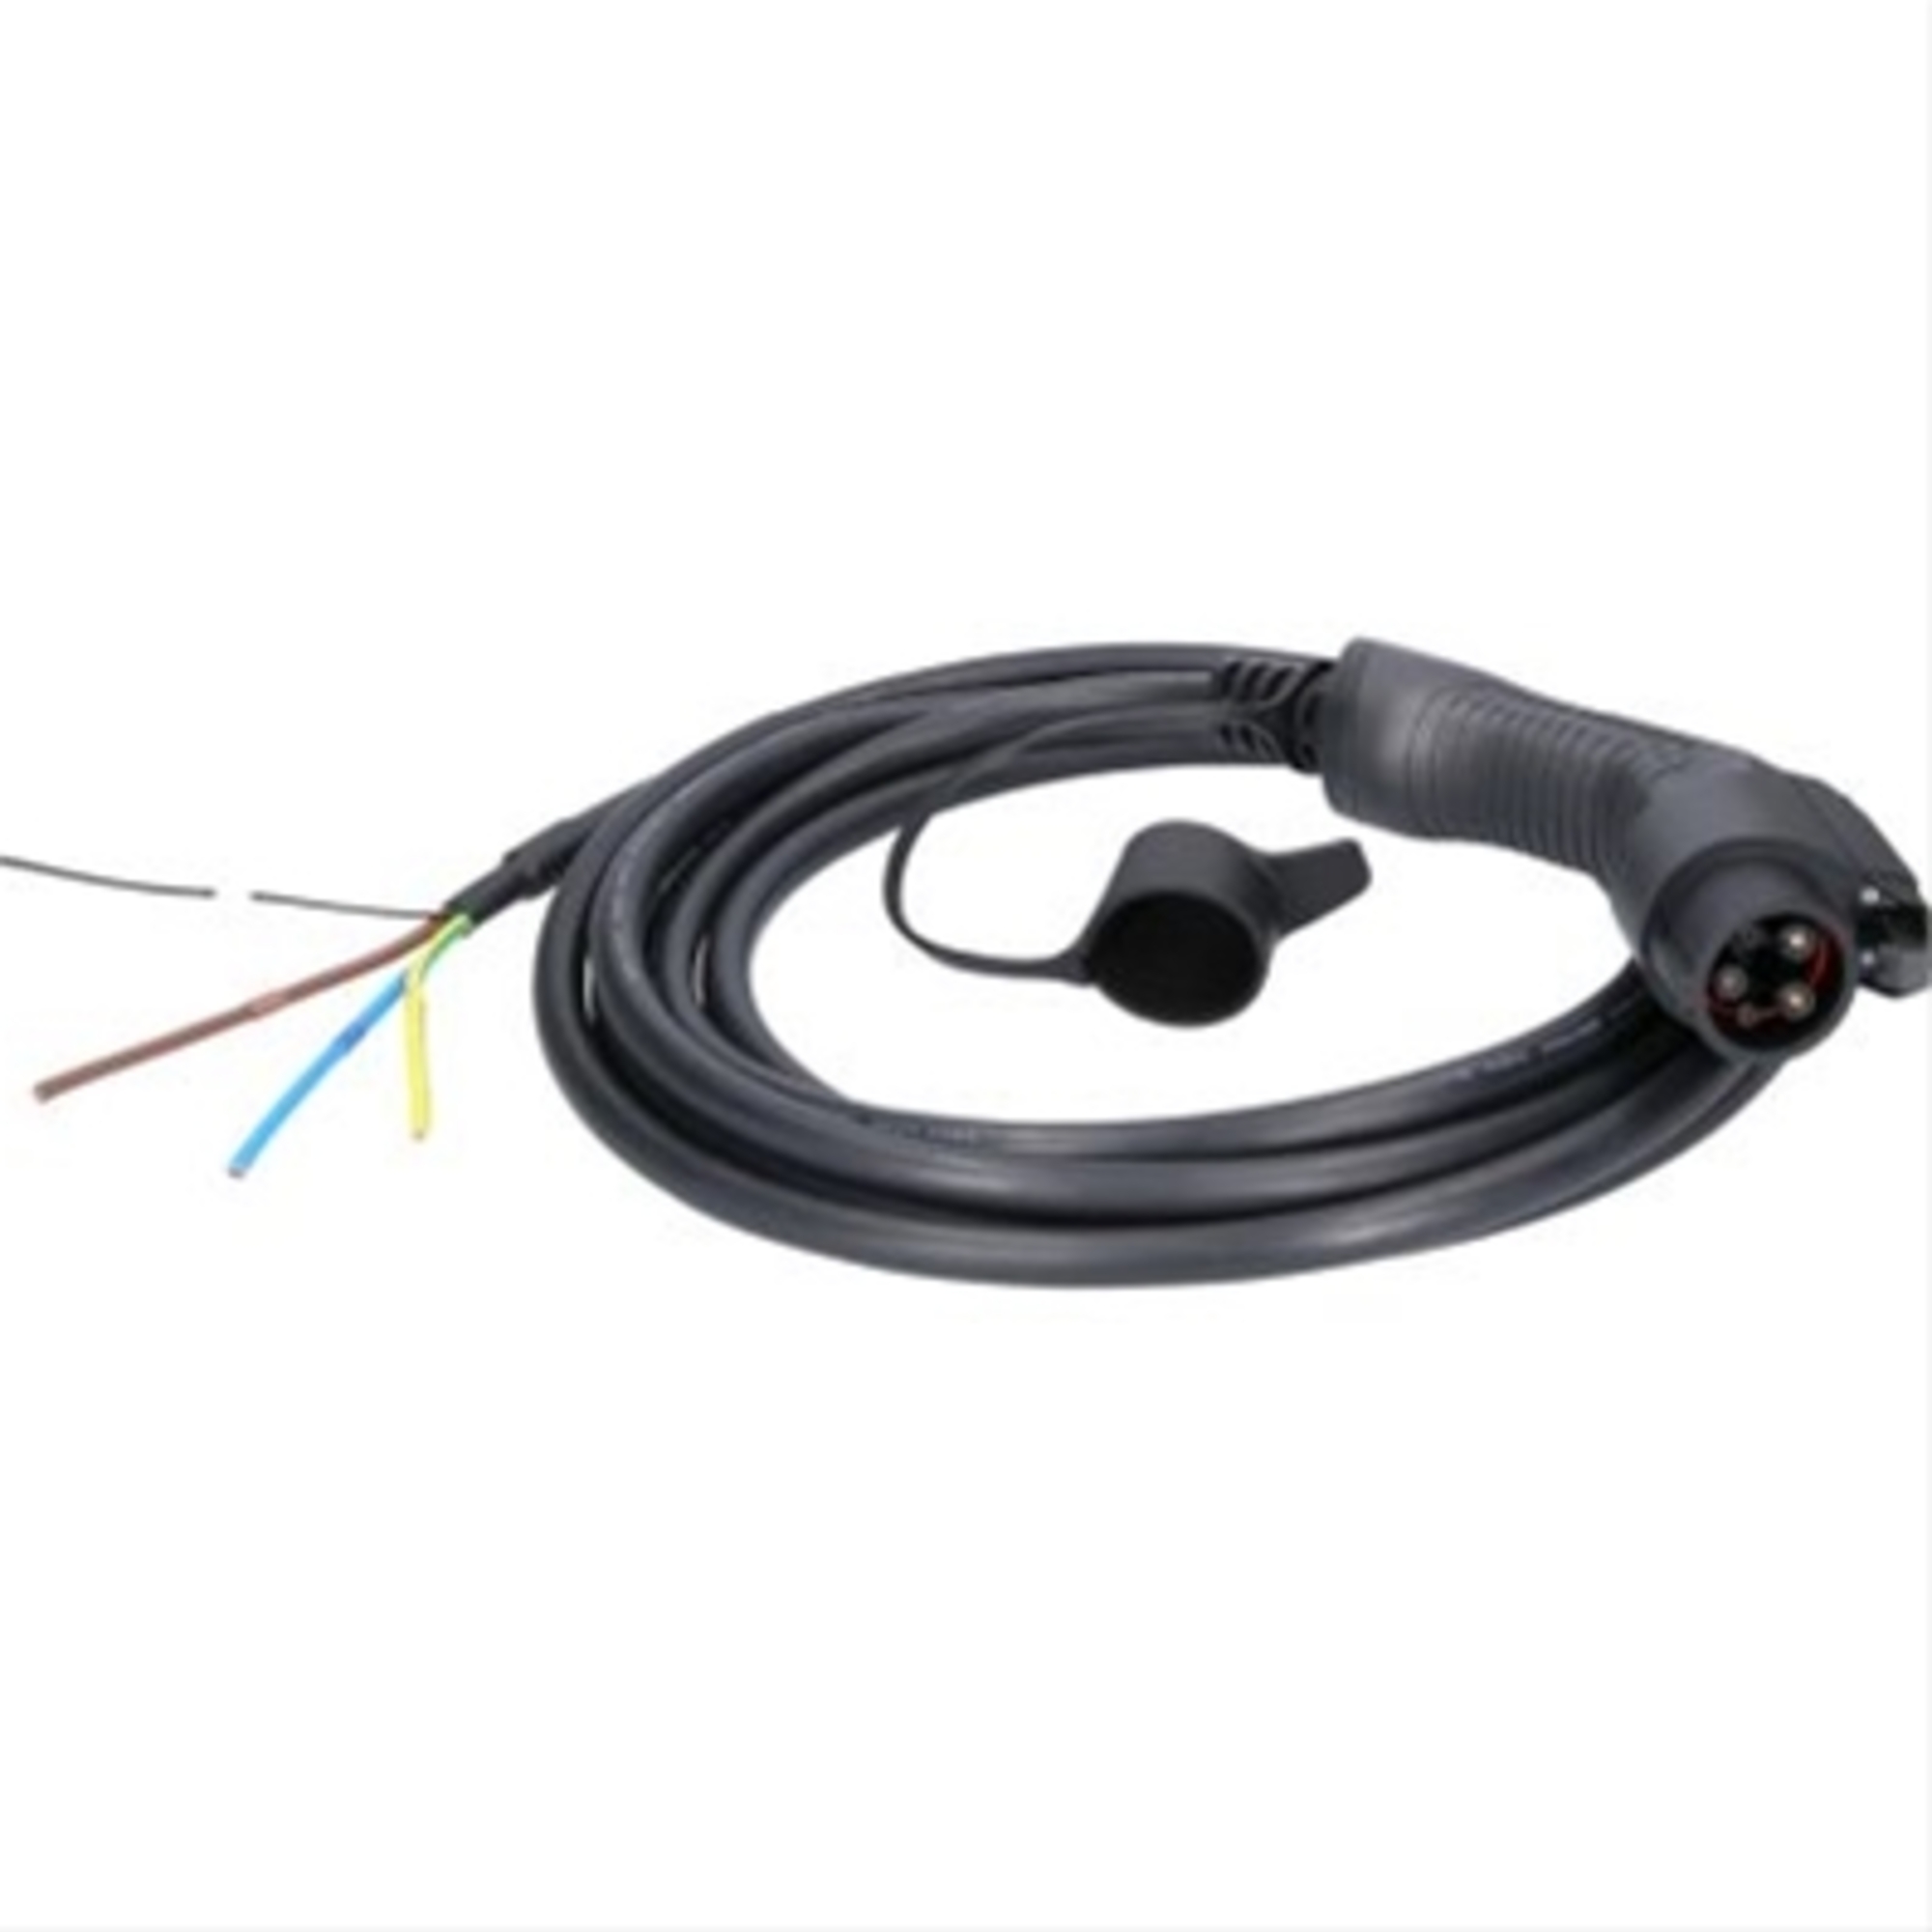 Cablu de incarcare capat deschis / typ 1 7.4 kw 230 v 32 a 5m-efuturo ks-tools